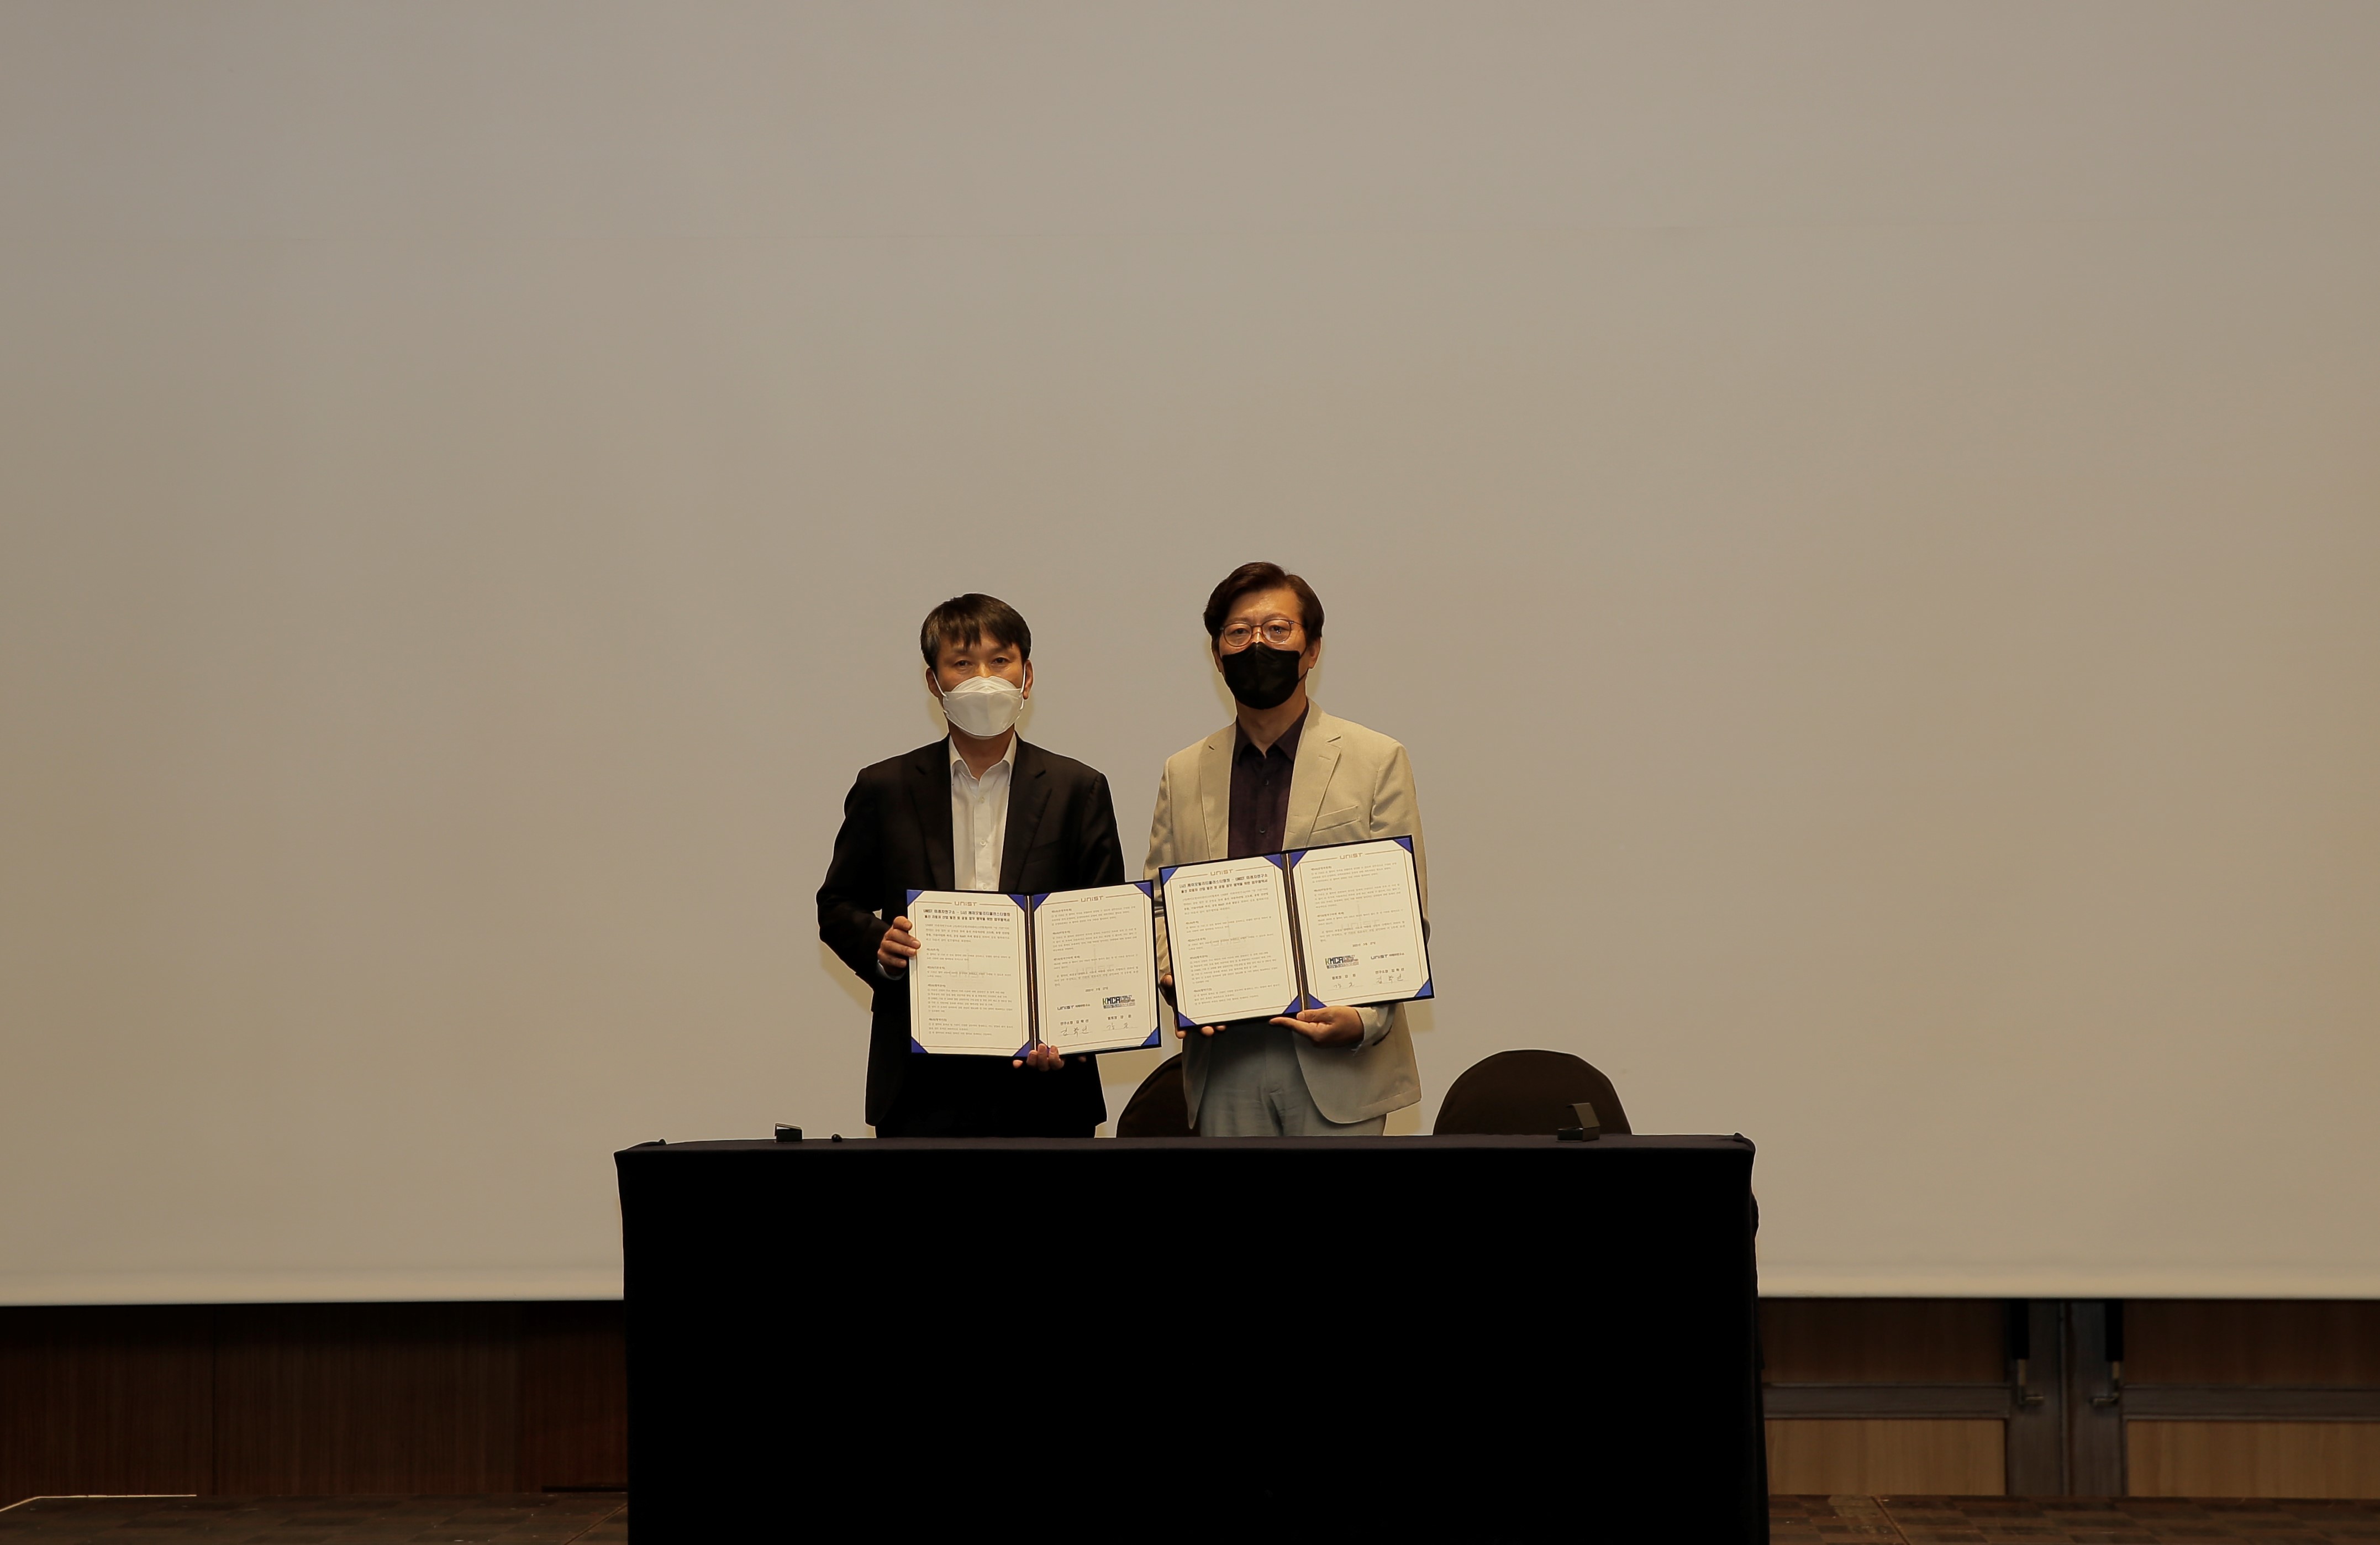 미래차연구소와 케이모빌리클러스터협회가 업무협약을 체결했다. 강돈 회장(왼쪽)과 김학선 소장(오른쪽) | 사진: 김경채